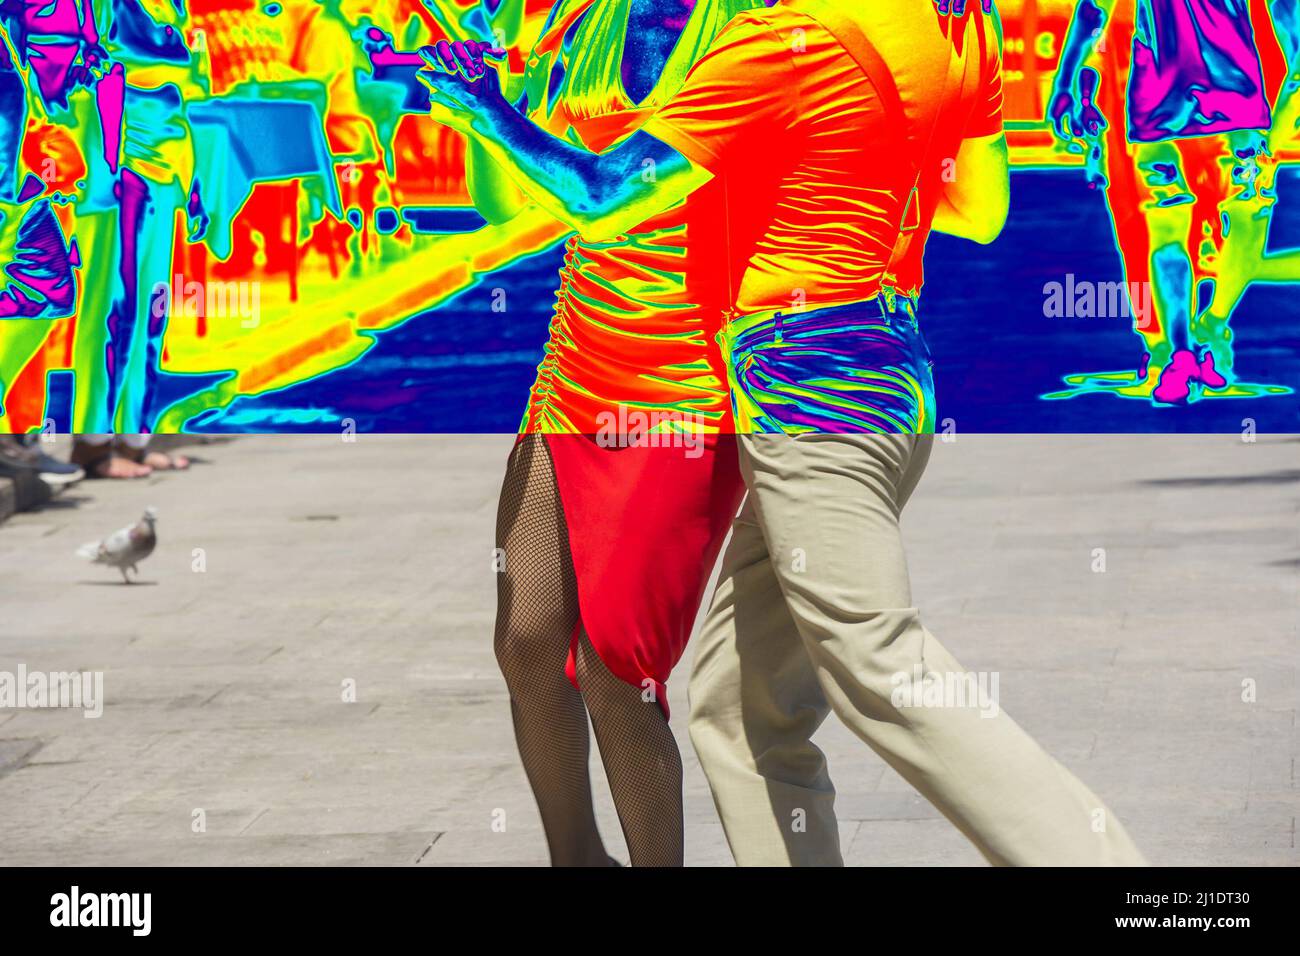 Immagine termica e reale dei ballerini di strada che eseguono il tango Foto Stock